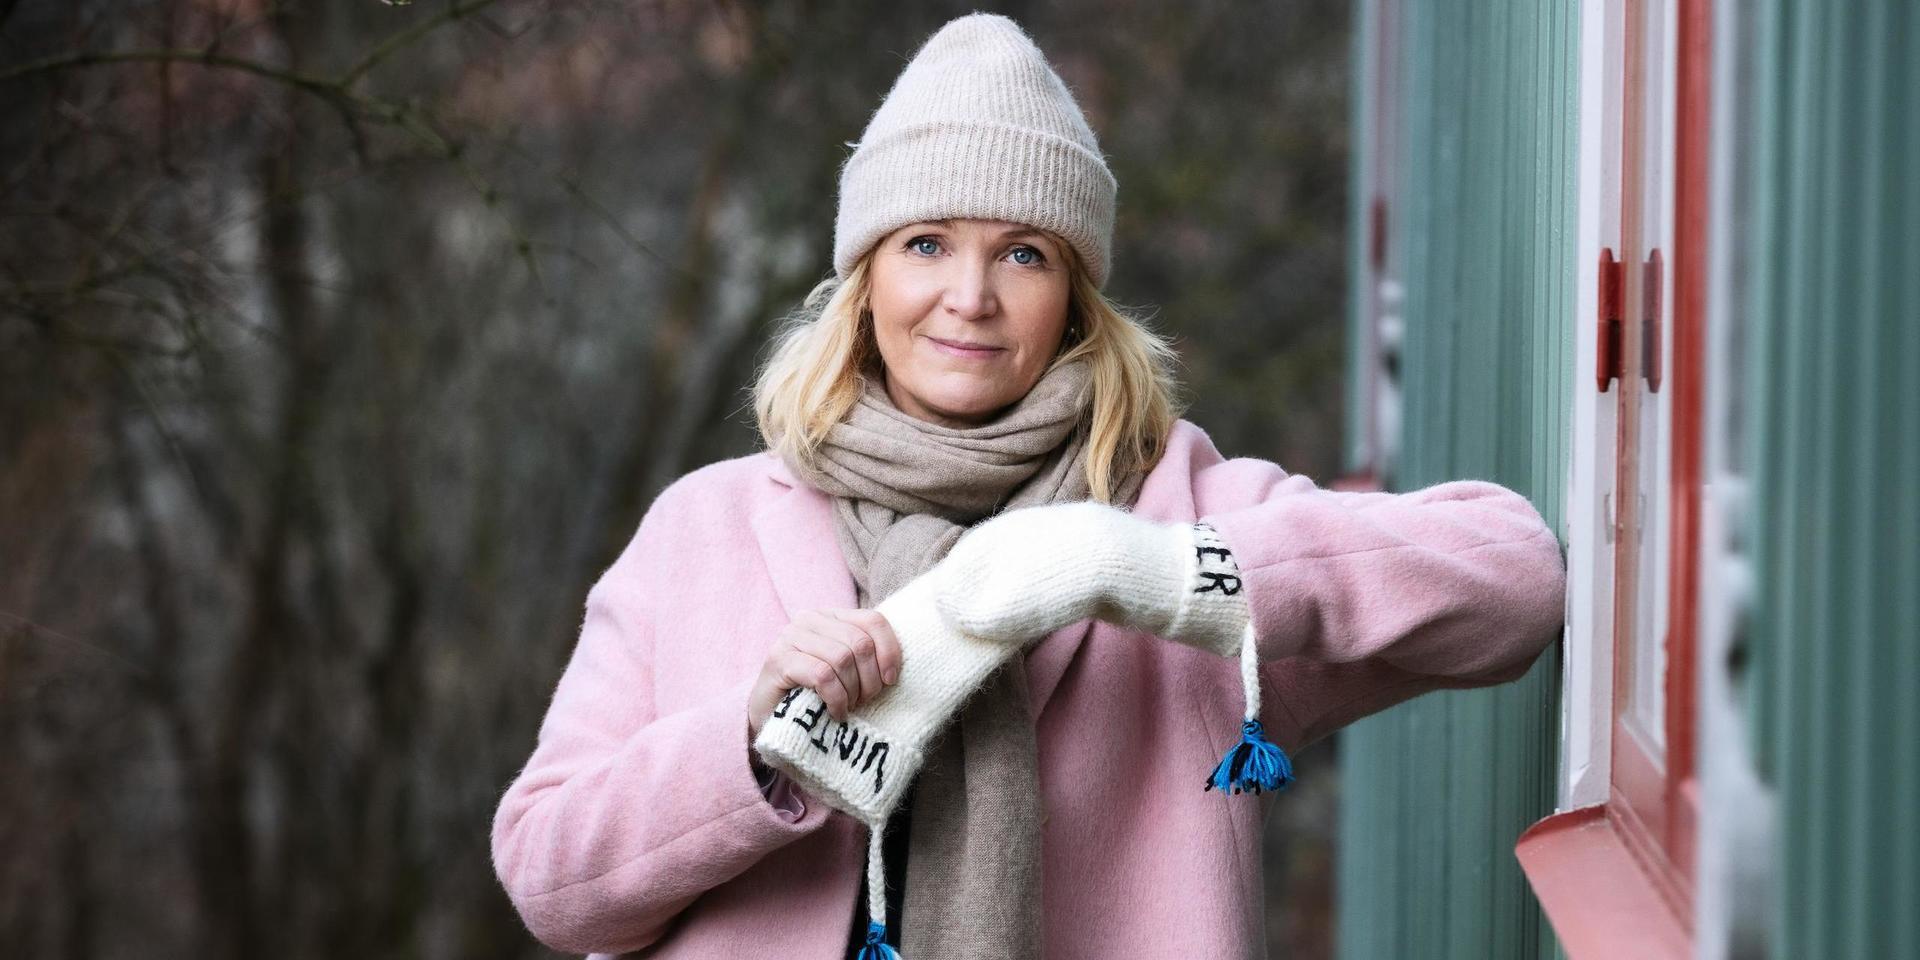 Vinter i P1, Kattis Ahlström. Vintervärd 2020/2021, P1 Sveriges Radio.